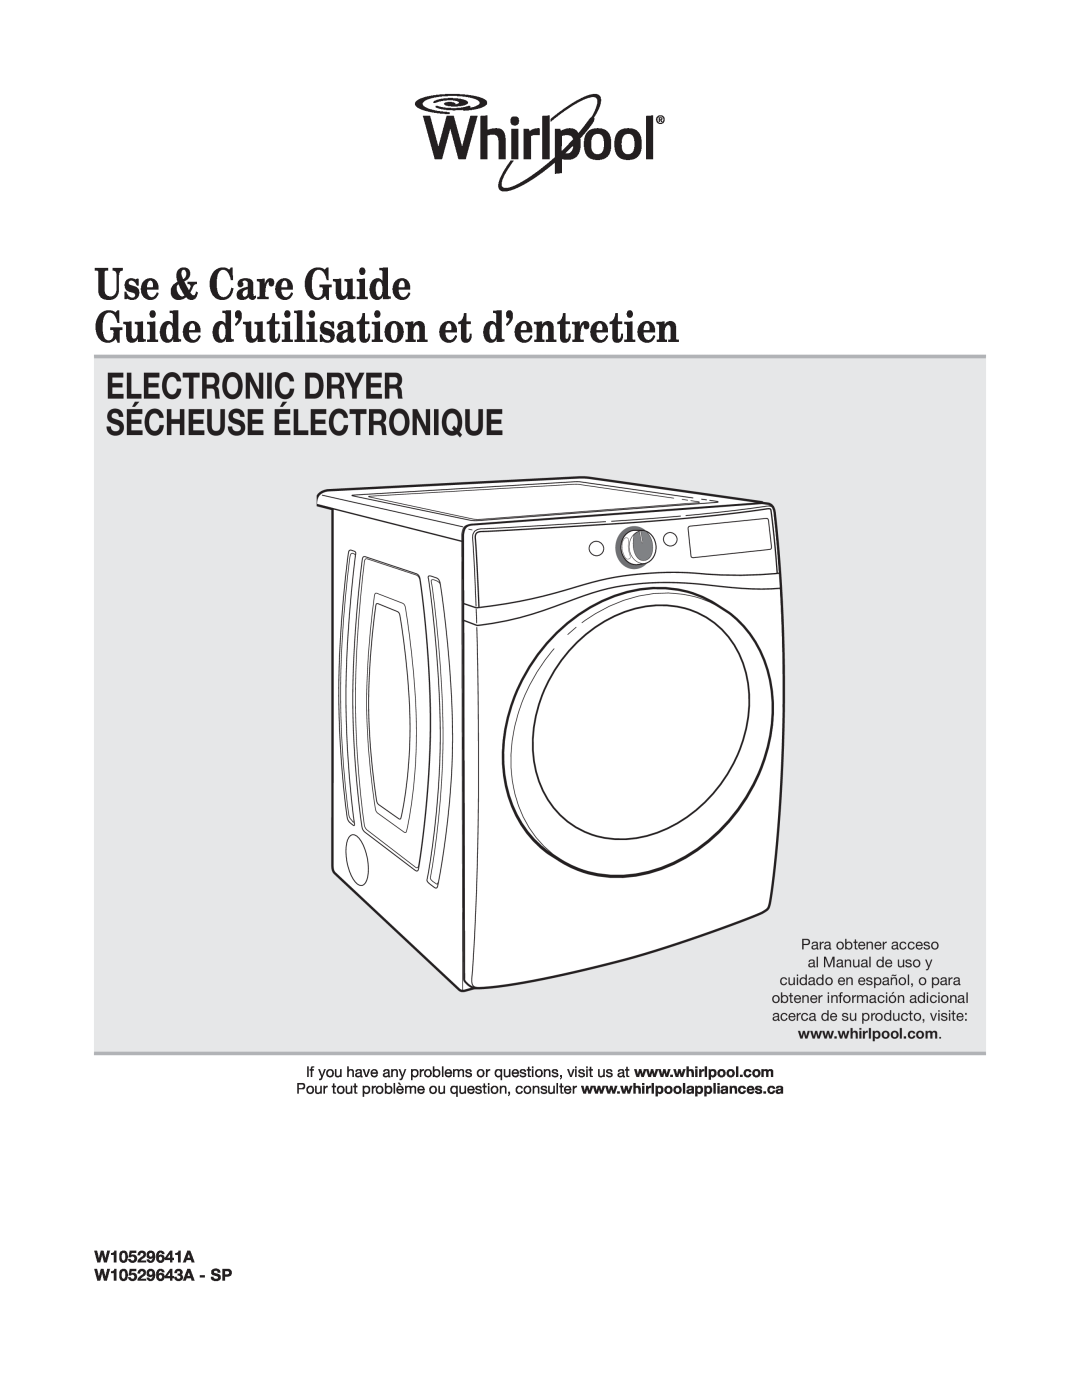 Whirlpool W10529641A manual Use & Care Guide, Guide d’utilisation et d’entretien, Electronic Dryer Sécheuse Électronique 